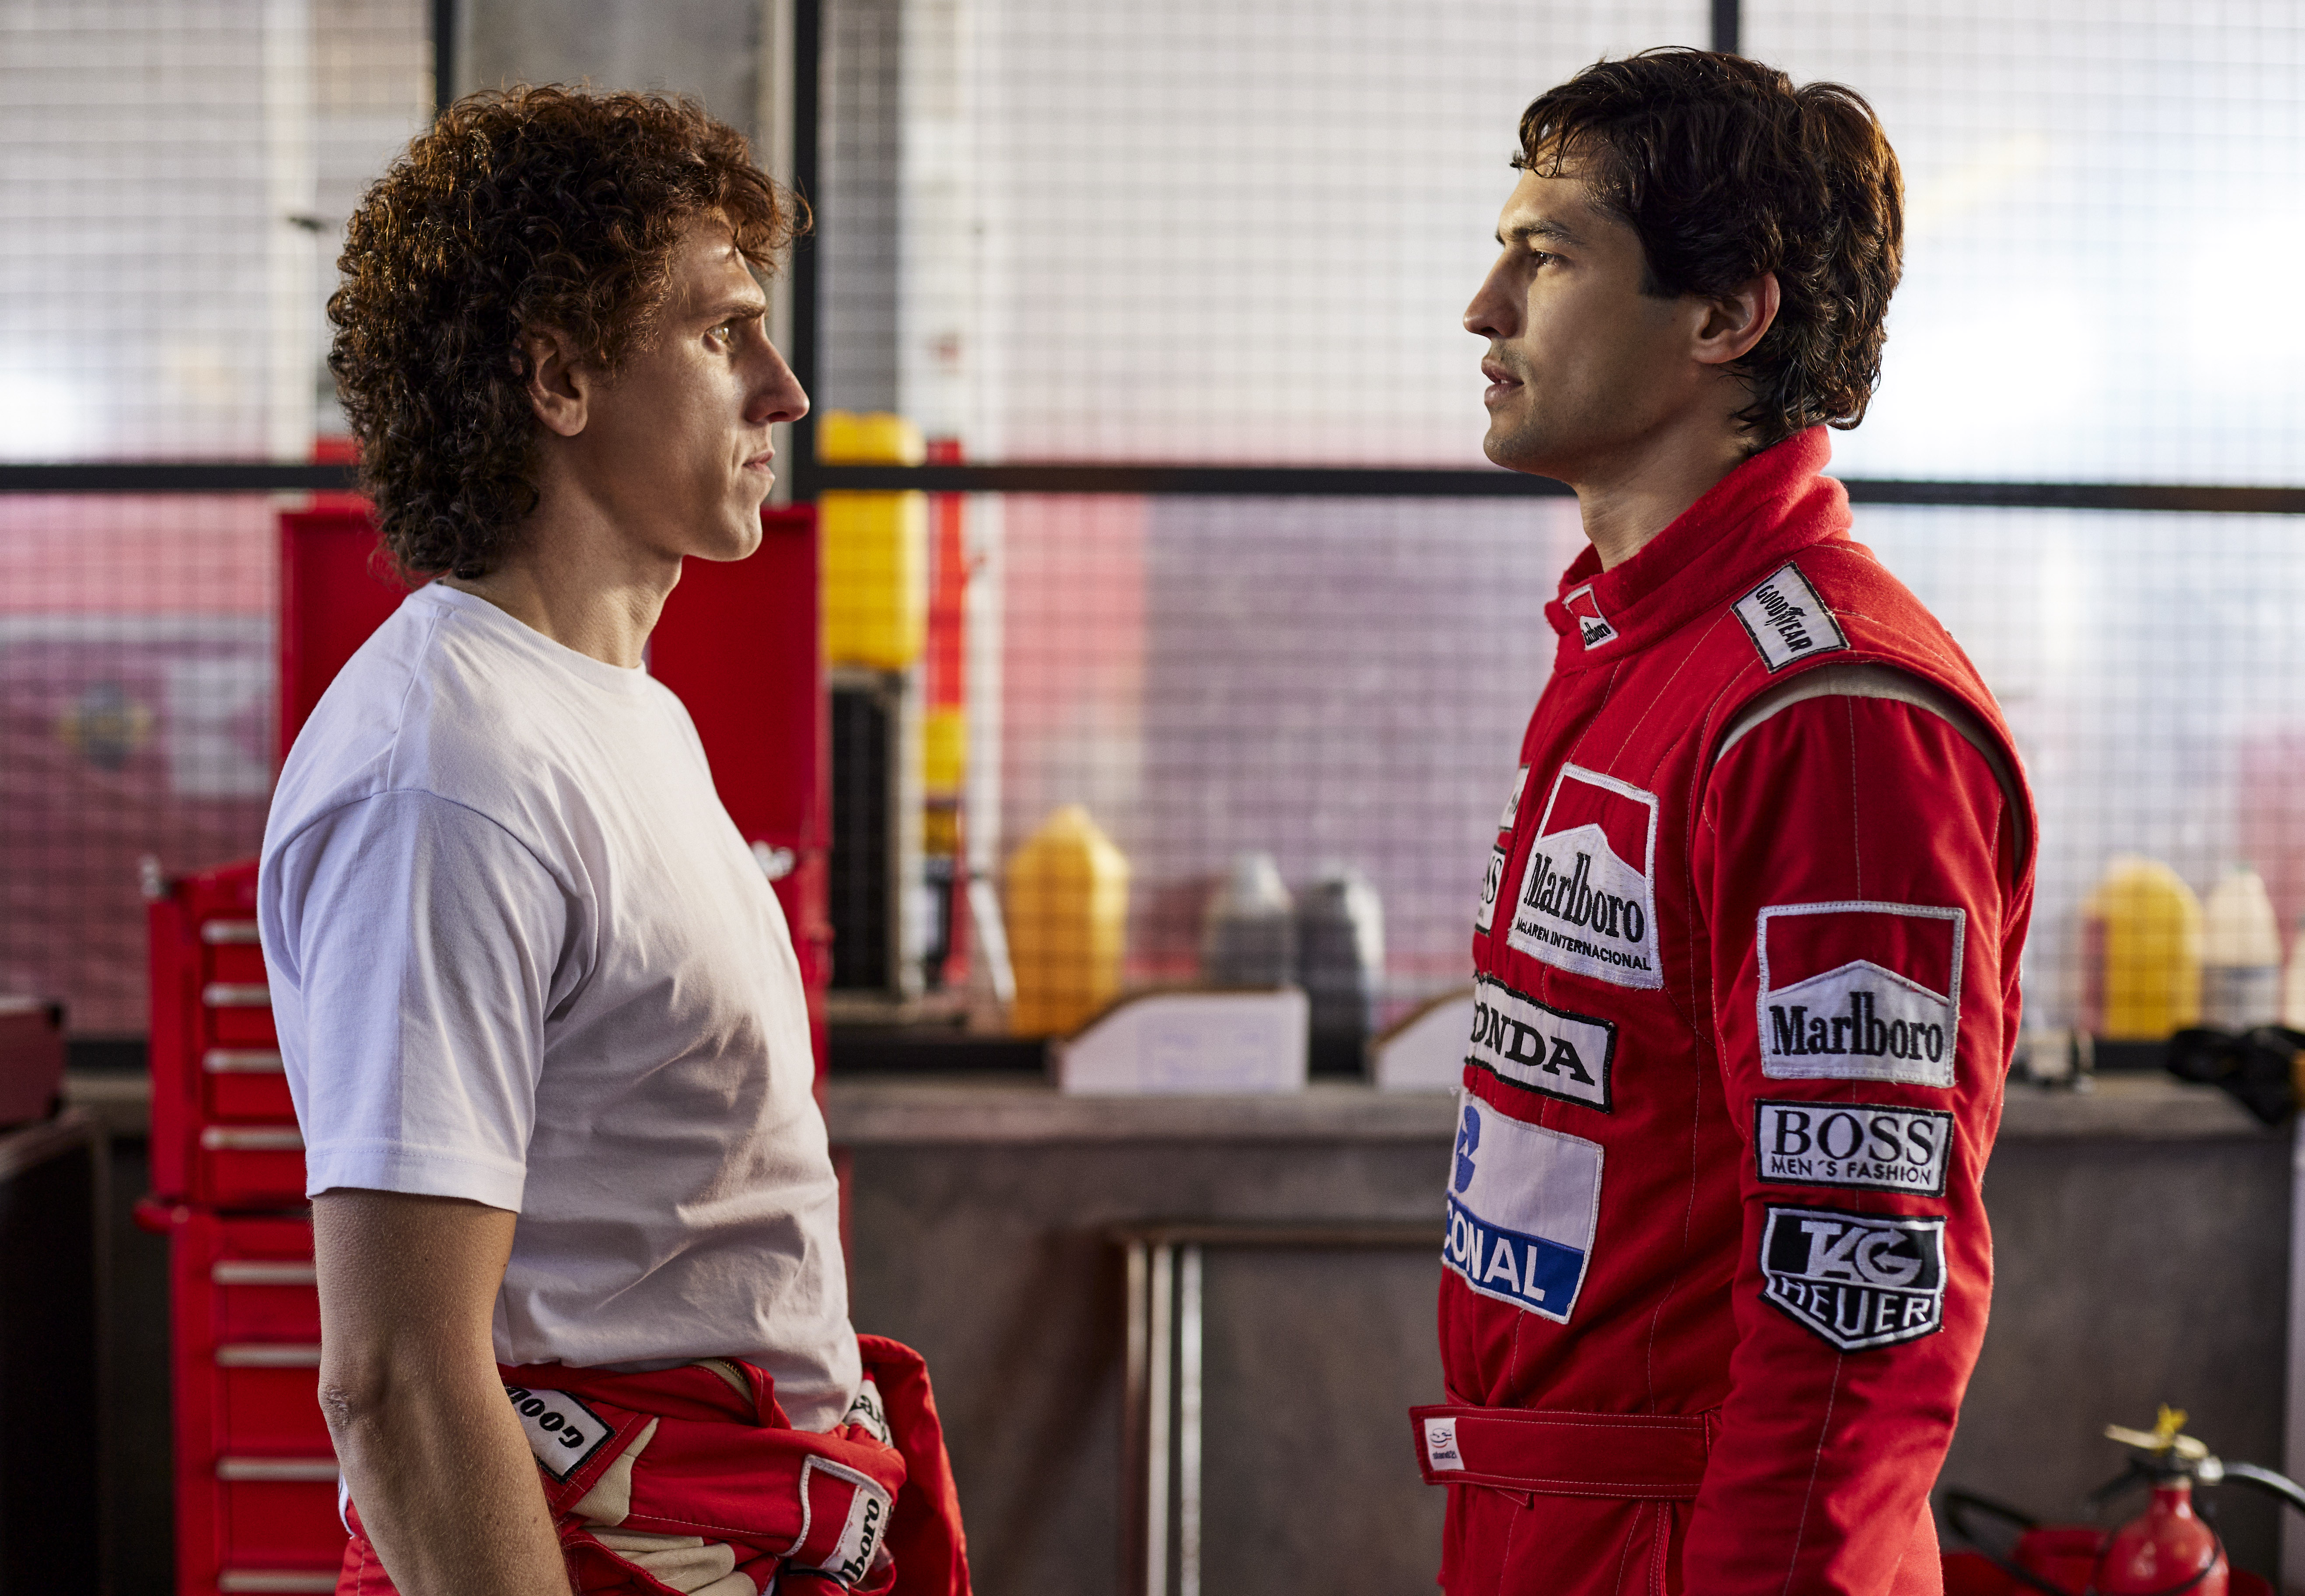 Prost (Matt Mella), à esquerda, encarando Senna (Gabriel Leone), à direita. Prost está só de camiseta branca enquanto Senna veste o macacão vermelho da McLaren.